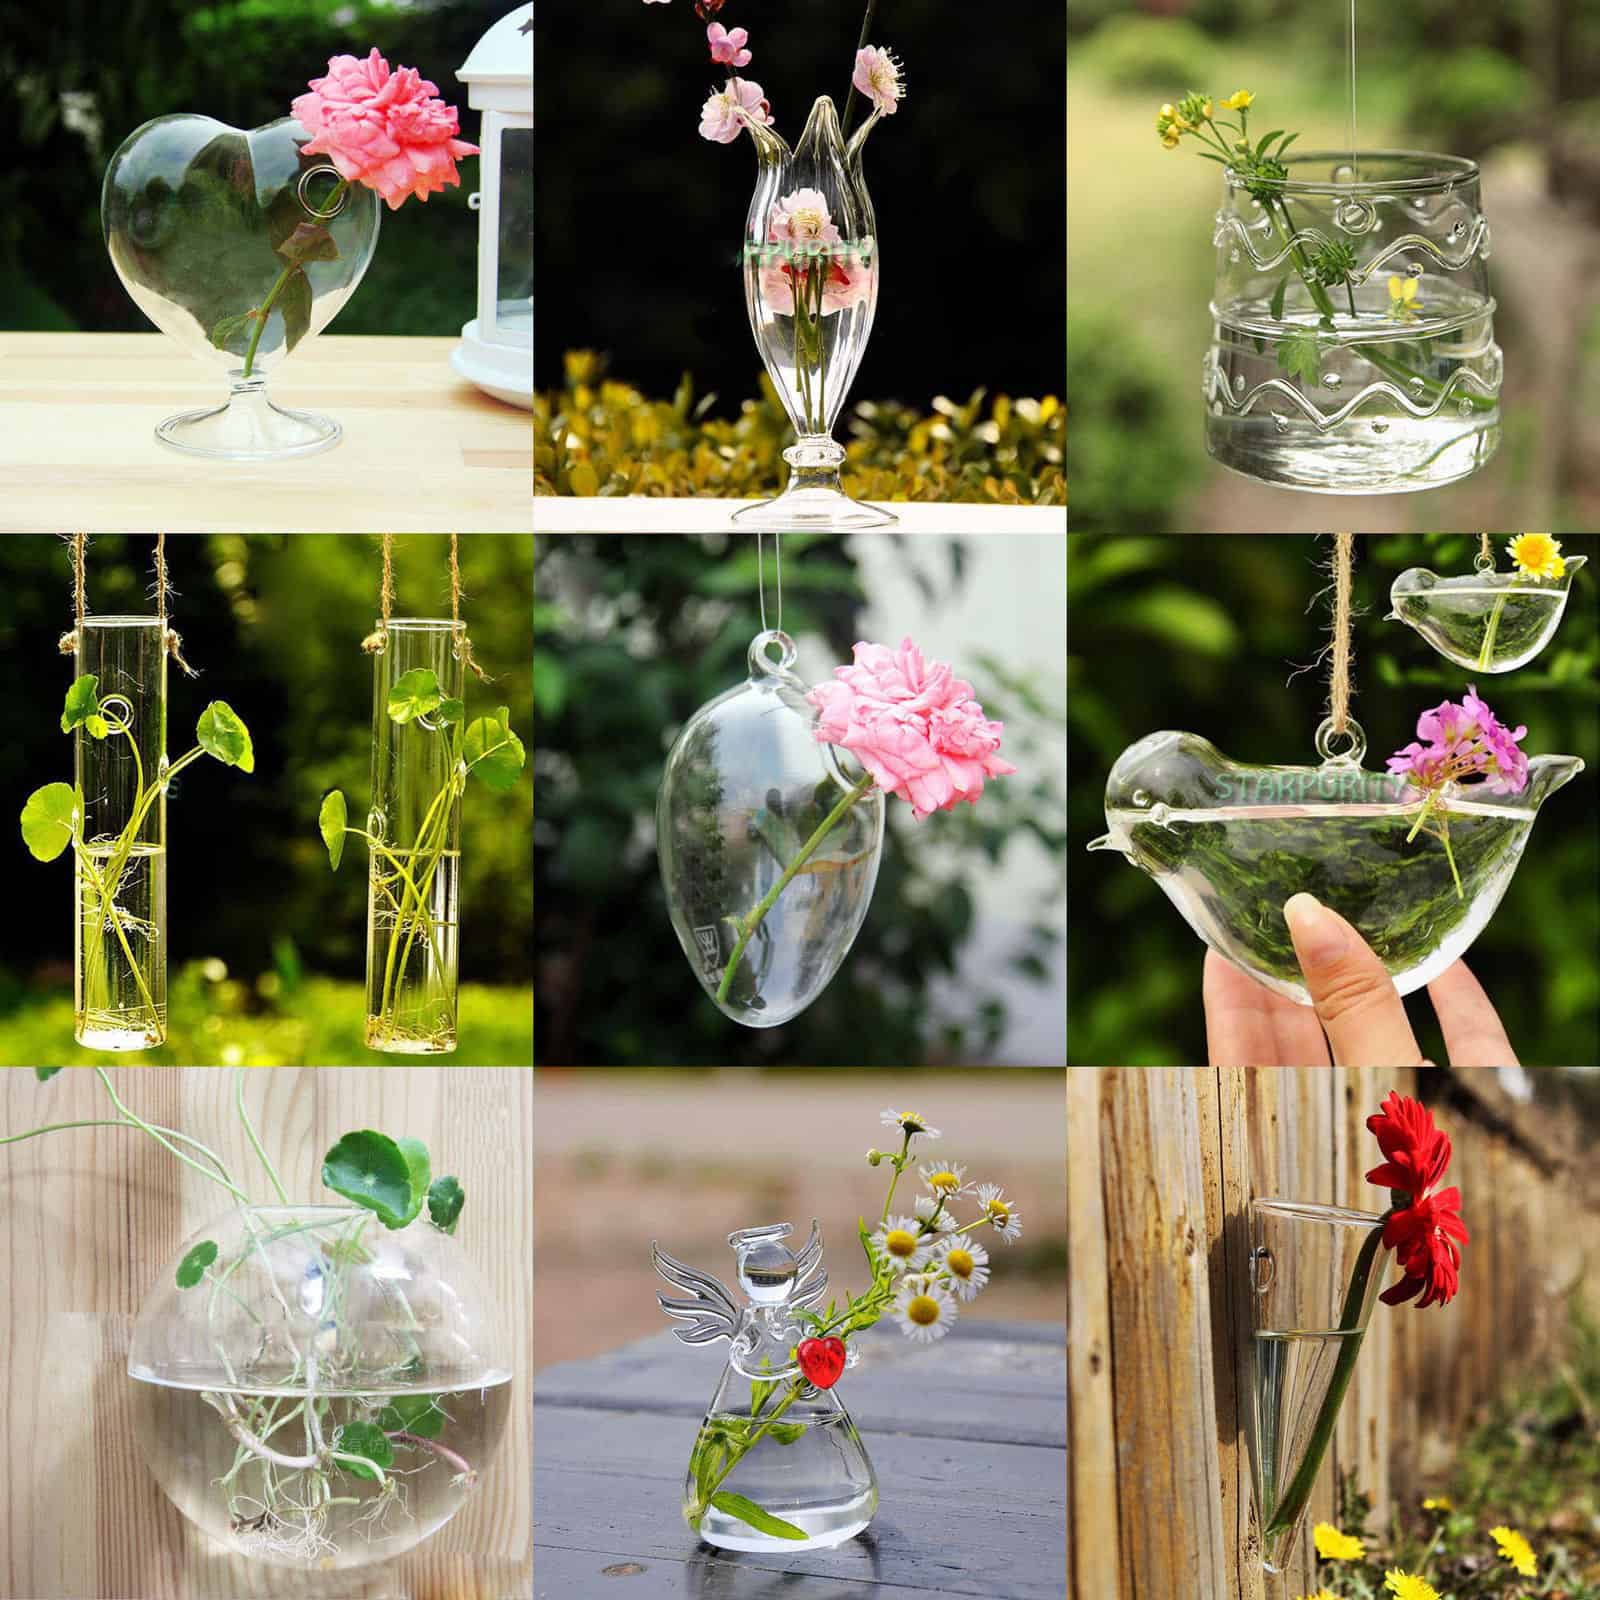 Die Qual der Wahl! 28 Vasen aus Glas ab nur 3,02 Euro (gratis Versand) pro Stück!